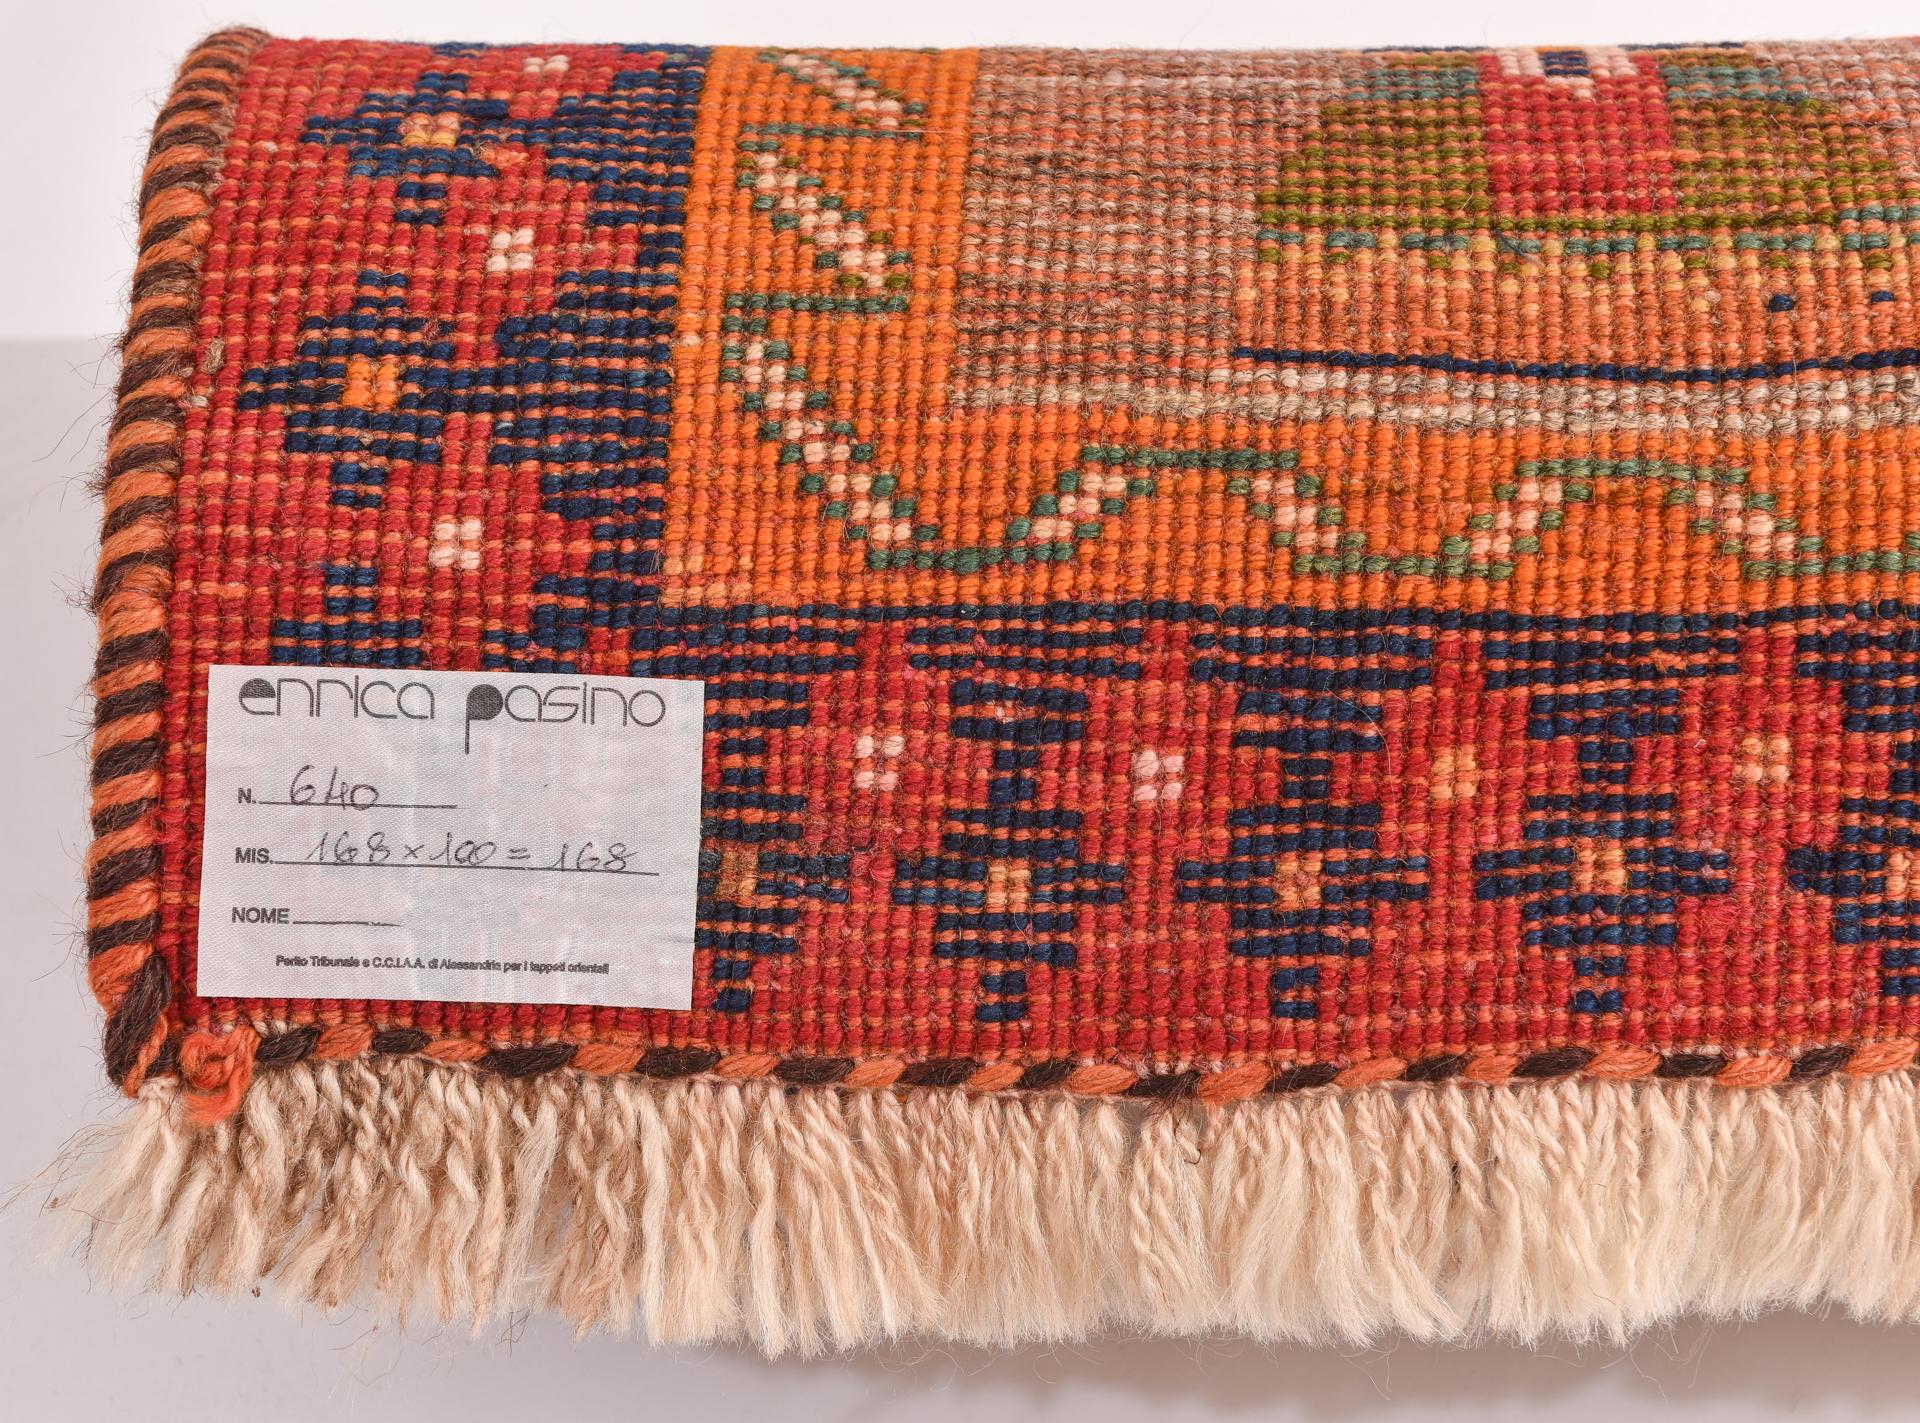 nr. 640 -  Collection privée ----------------------
Le fond du tapis est de la couleur écrue naturelle de la laine, mais le dessin est polychrome et très agréable, avec des femmes nomades aux vêtements éclatants qui dansent et trois rangées